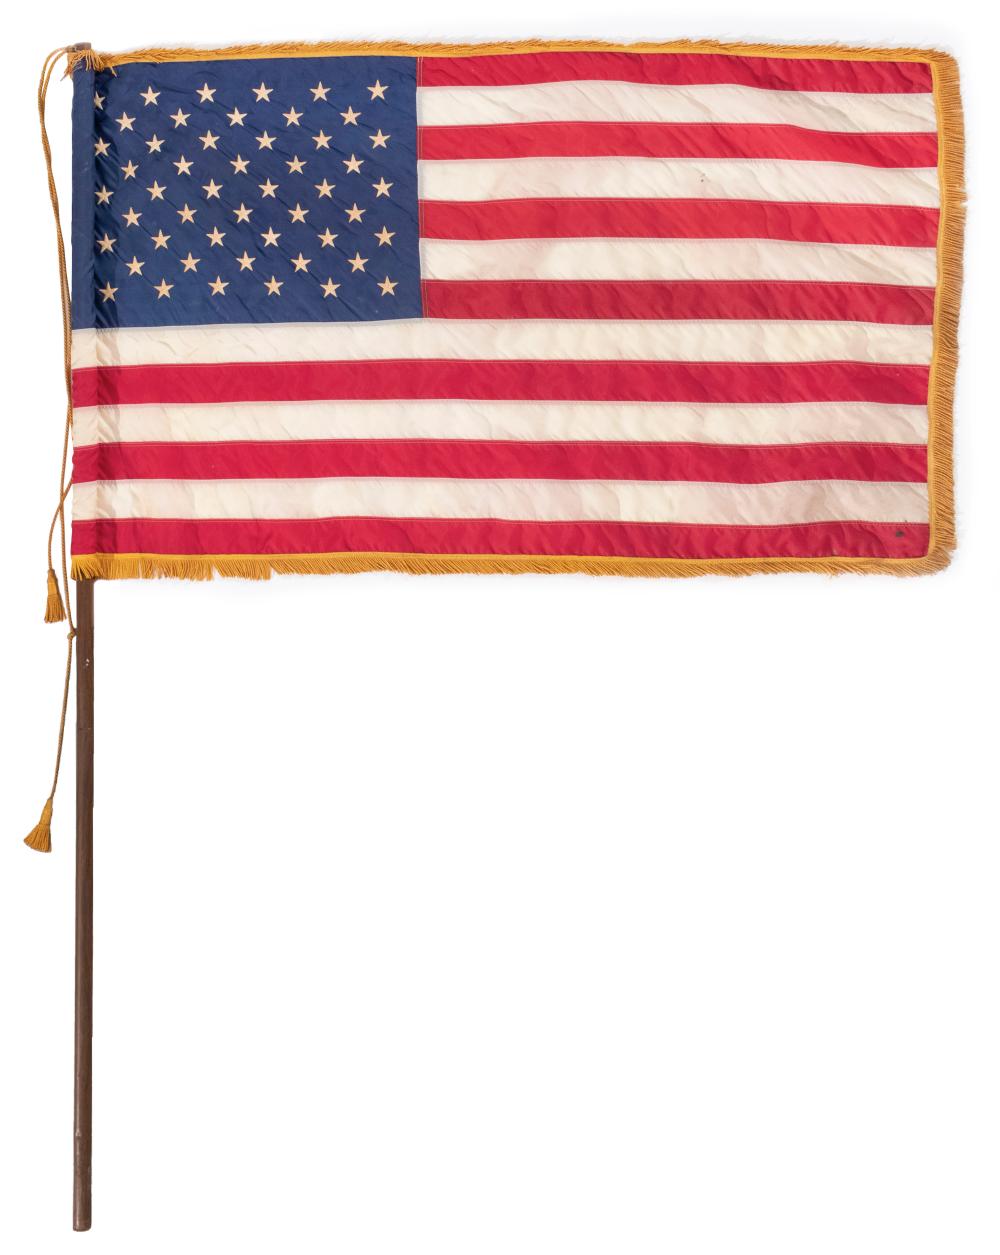 FIFTY-STAR U.S. FLAG THIRD QUARTER